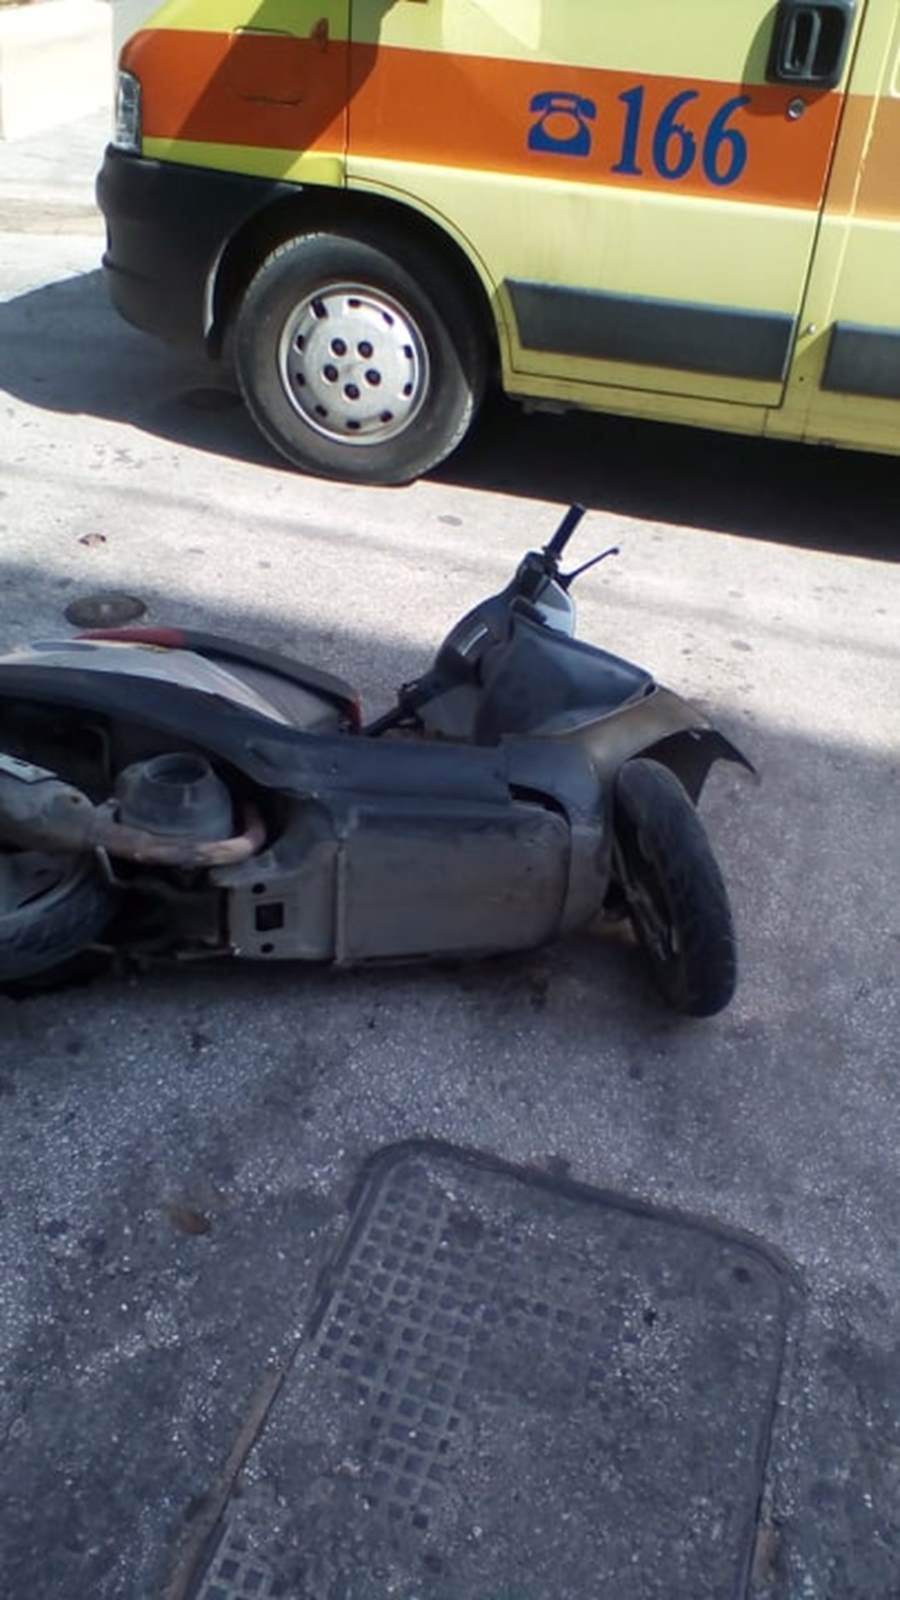 Σύγκρουση ΙΧ αυτοκινήτου με μοτοσικλέτα στη Λάρισα – Στο Πανεπιστημιακό Νοσοκομείο ένας τραυματίας (φωτο)